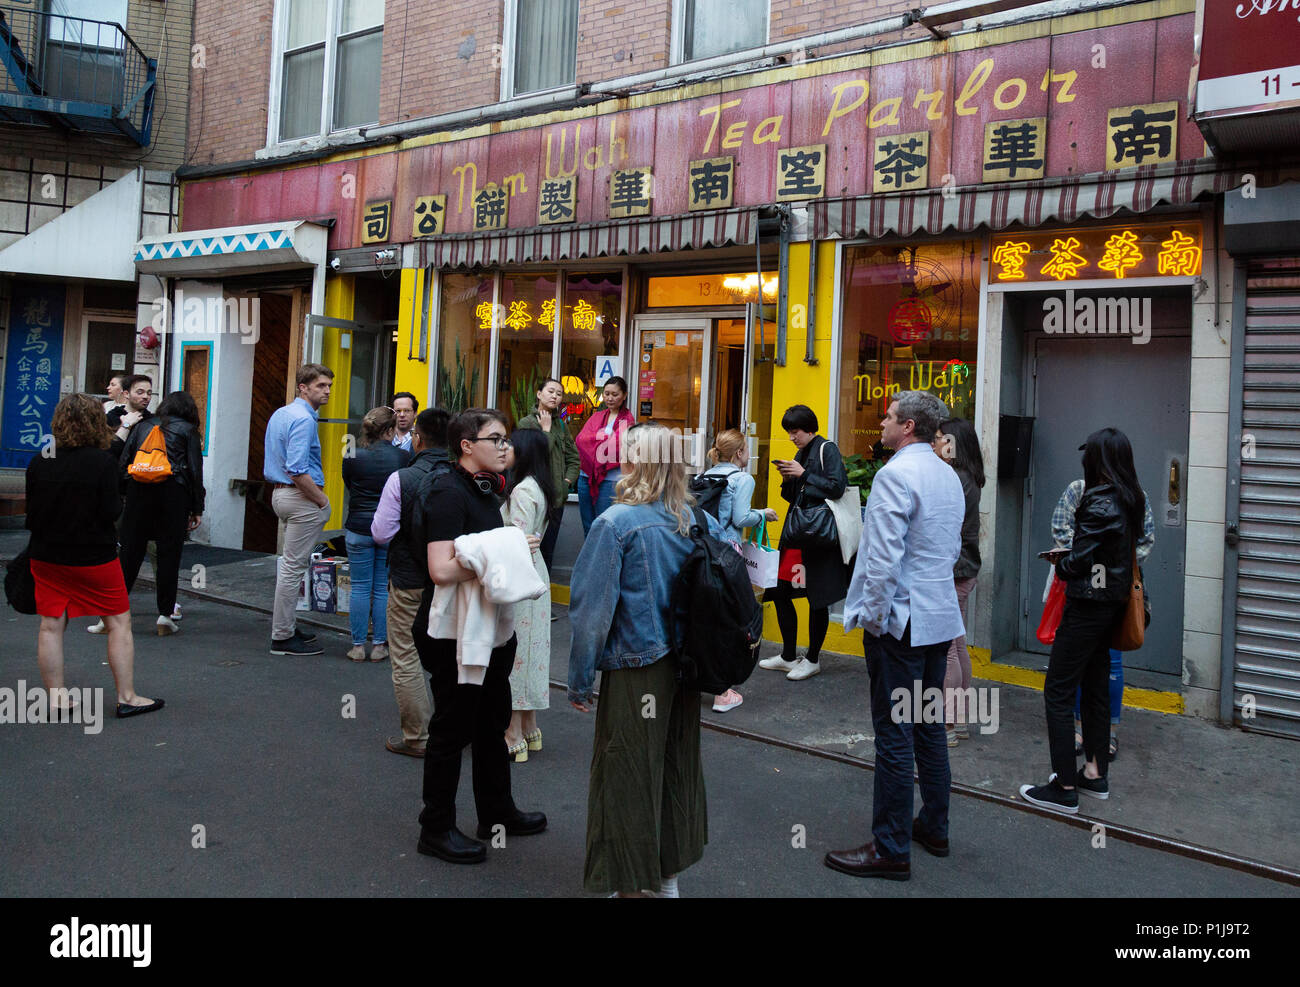 Menschen außerhalb der Nam Wah Kaffee Stube, ein chinesisches Restaurant in Chinatown, New York City, USA Stockfoto